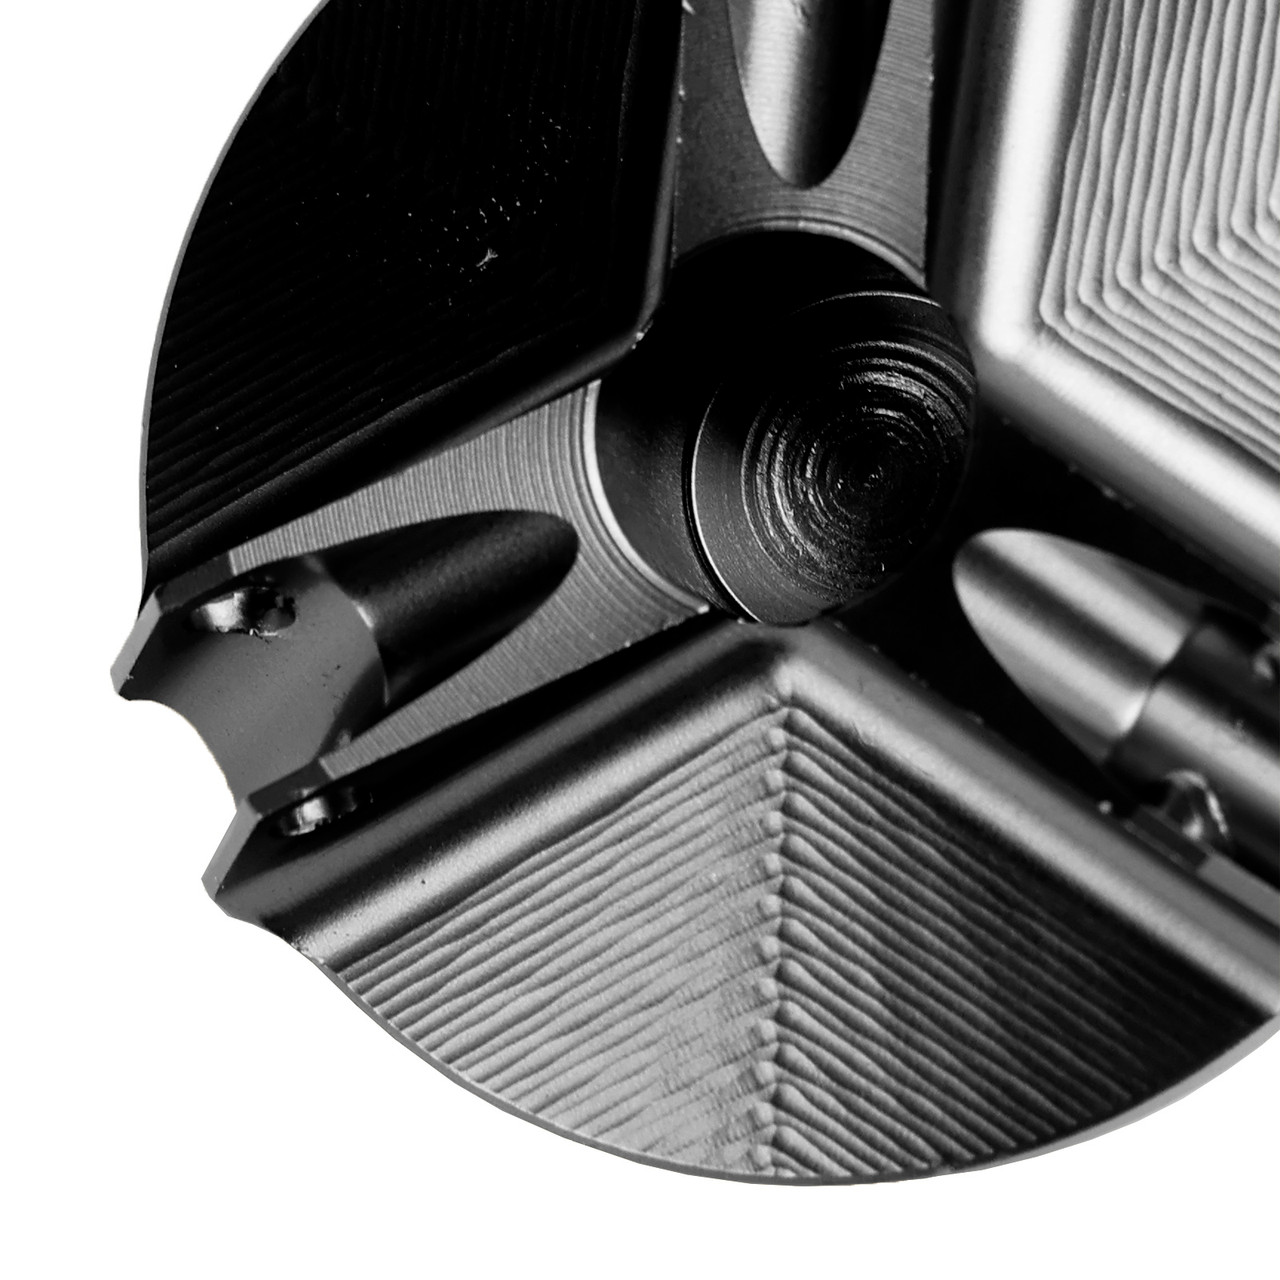 Billet Oil Filler Cap Black For Yamaha MT-03 MT03 MT-07 MT07 MT-10 / SP MT-25